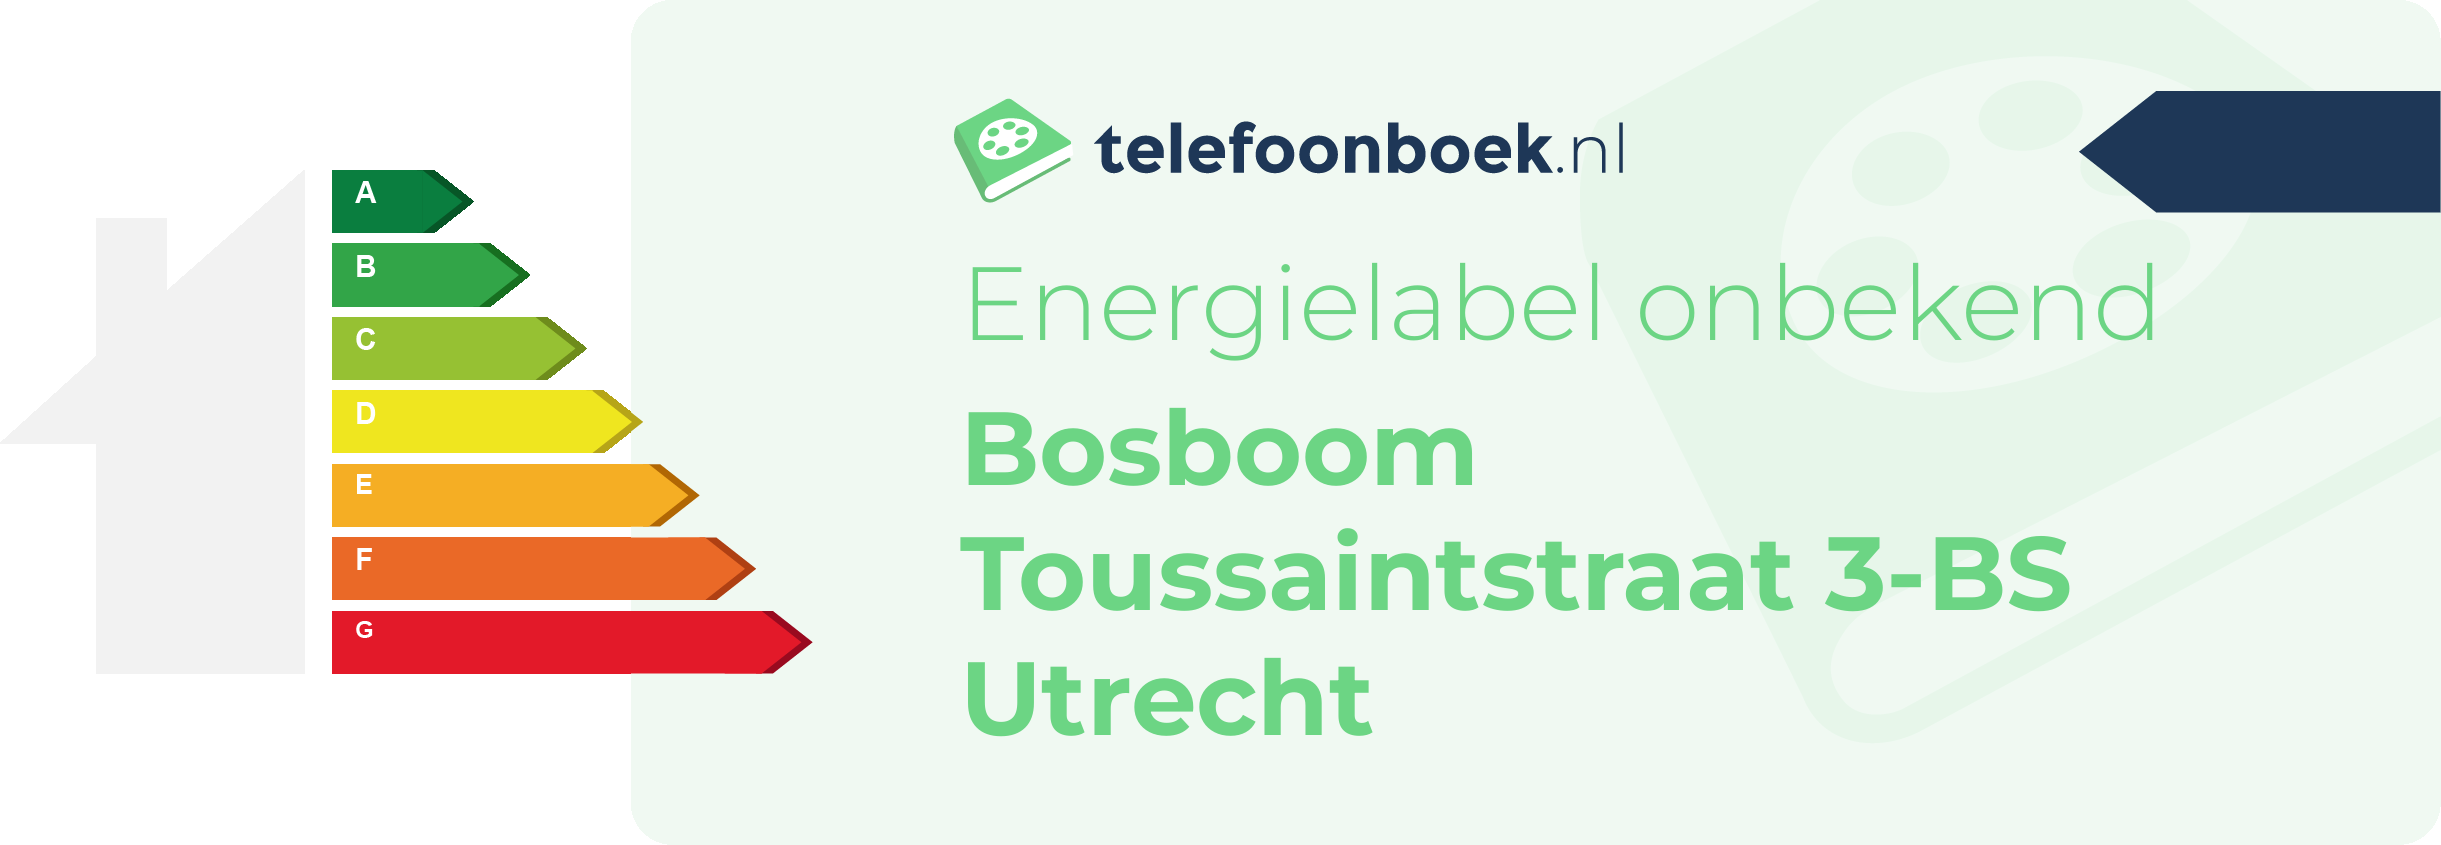 Energielabel Bosboom Toussaintstraat 3-BS Utrecht